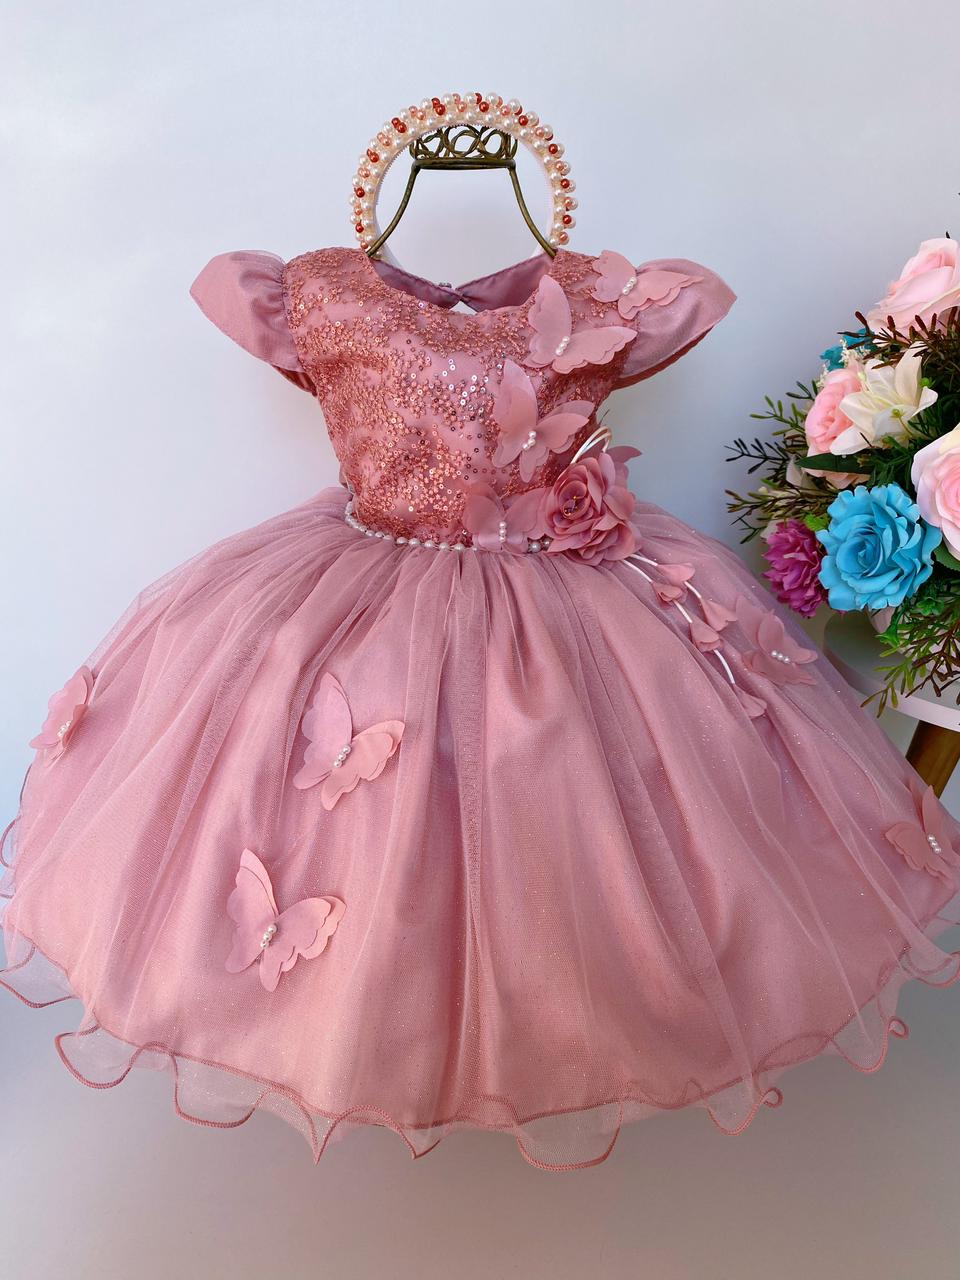 Vestido Infantil Rosê Aplique de Borboletas Flor Brilho Luxo